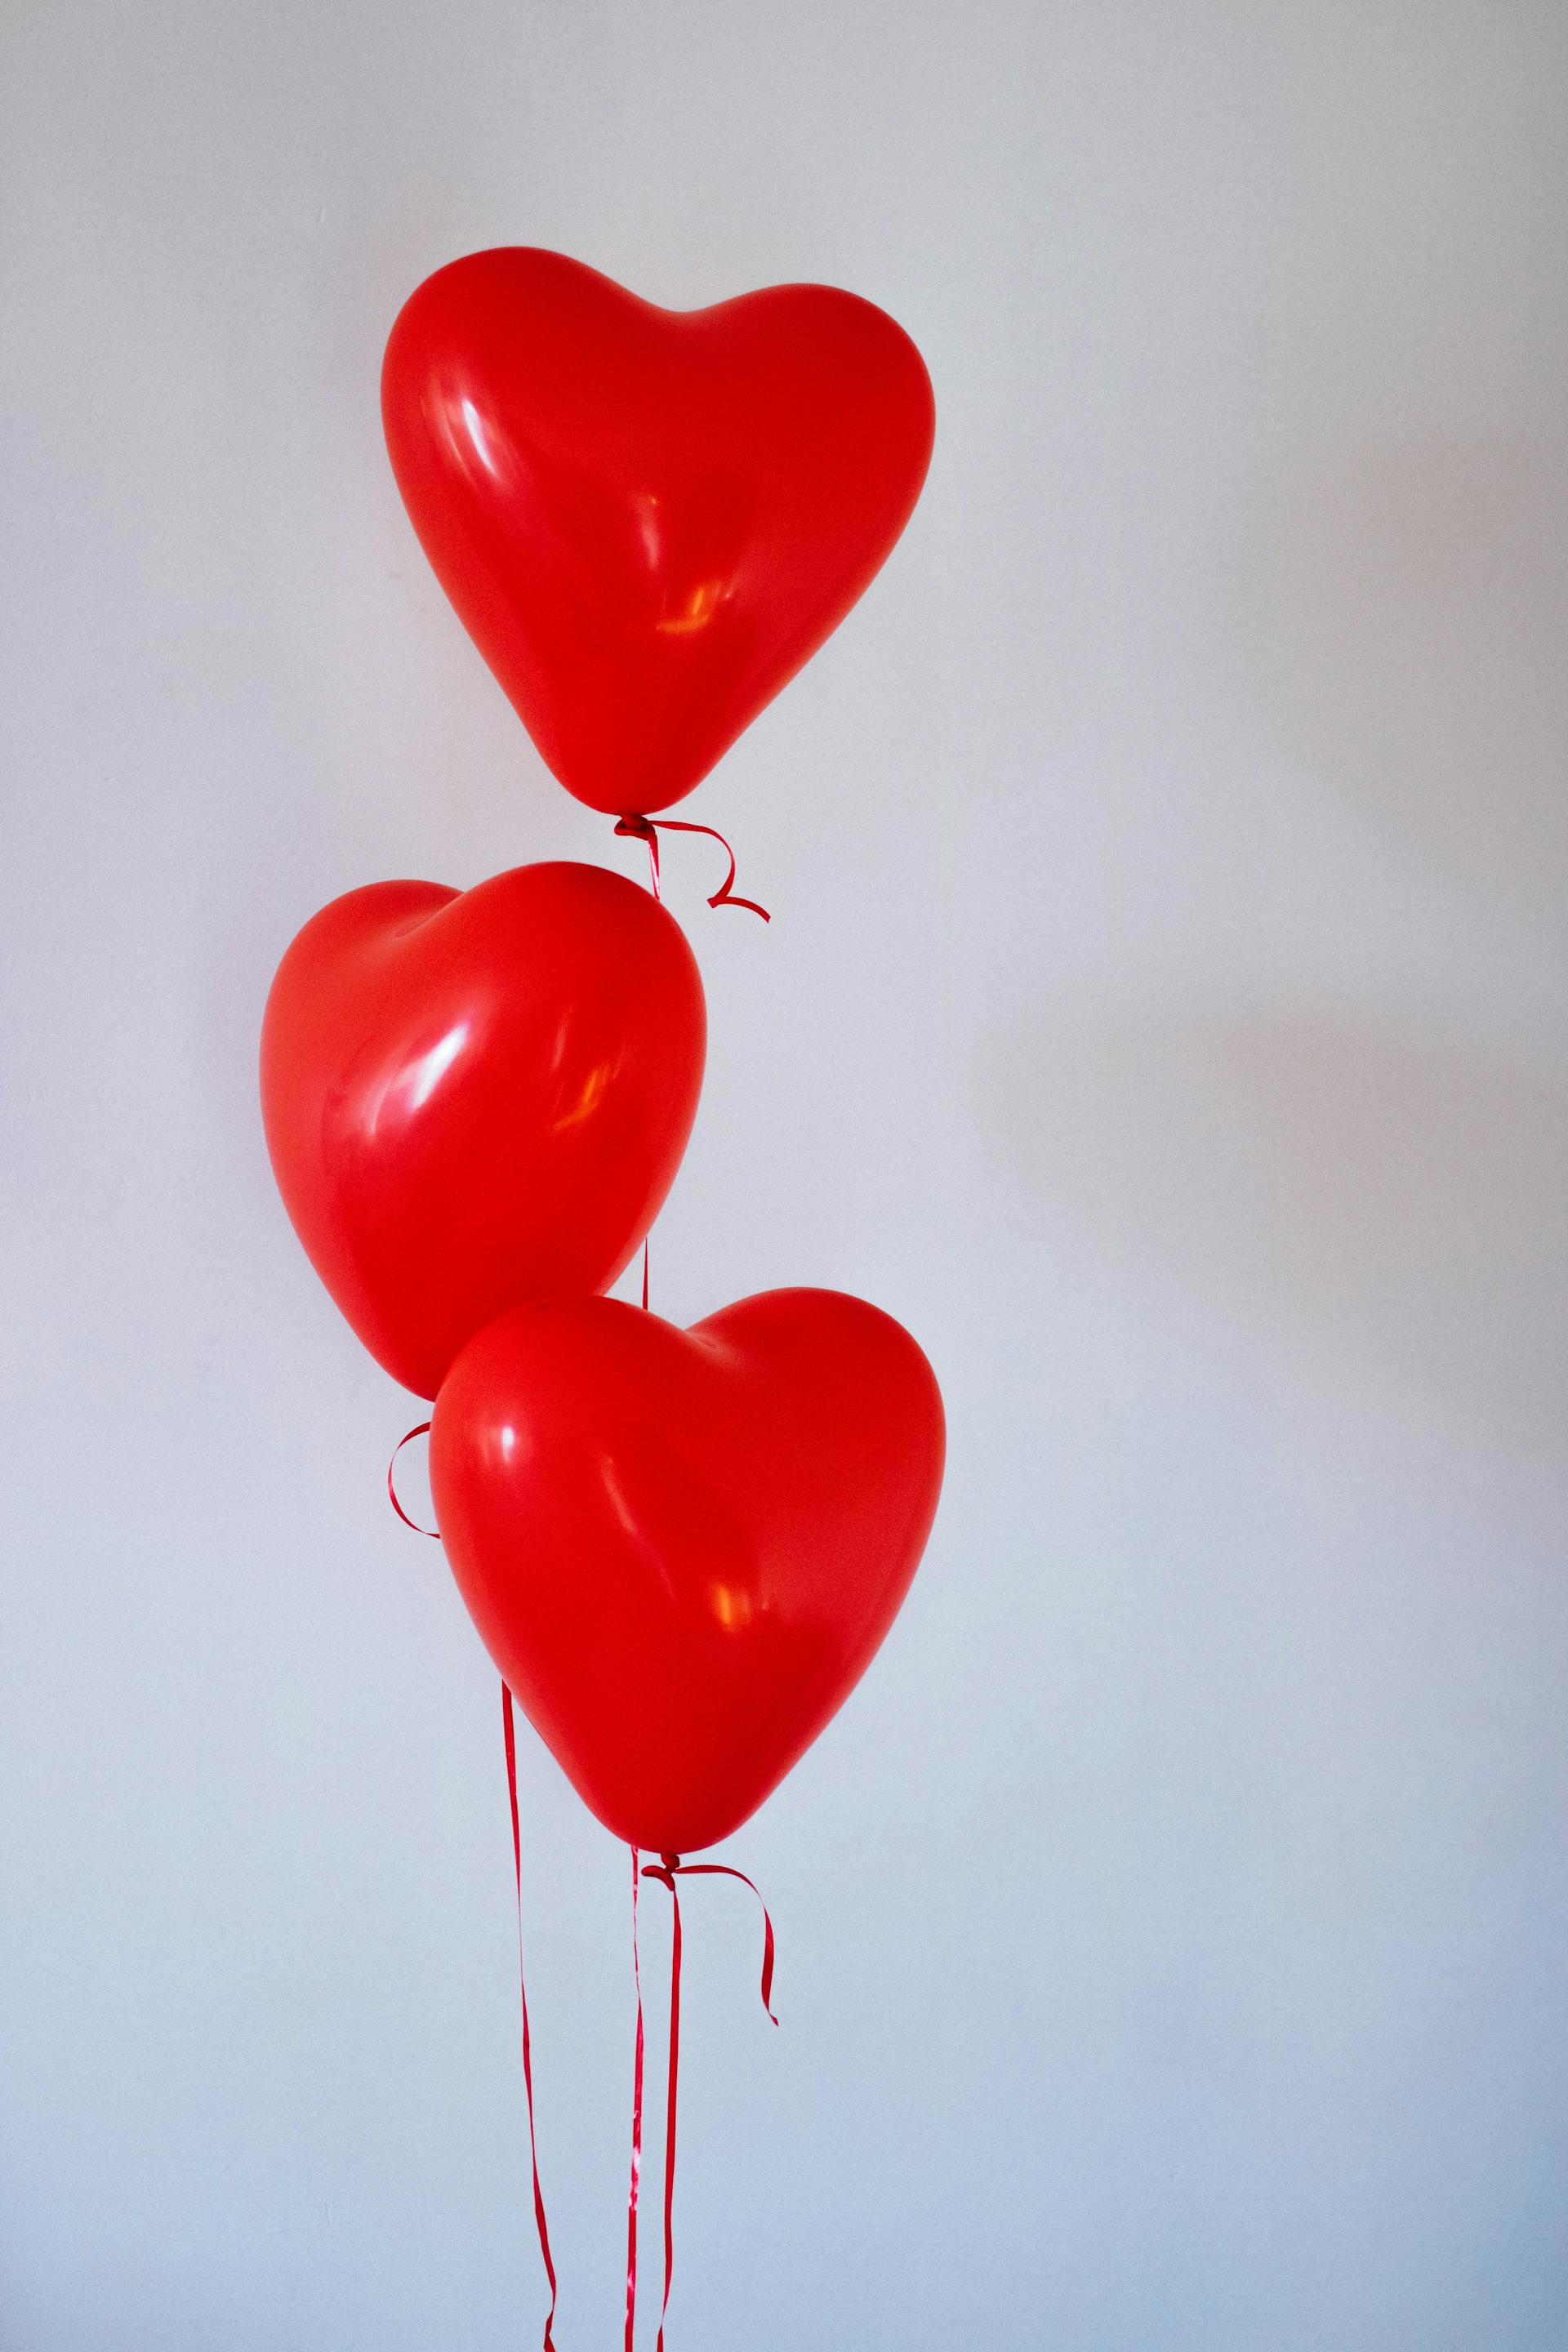 Trois ballons en forme de cœur | Source : Pexels